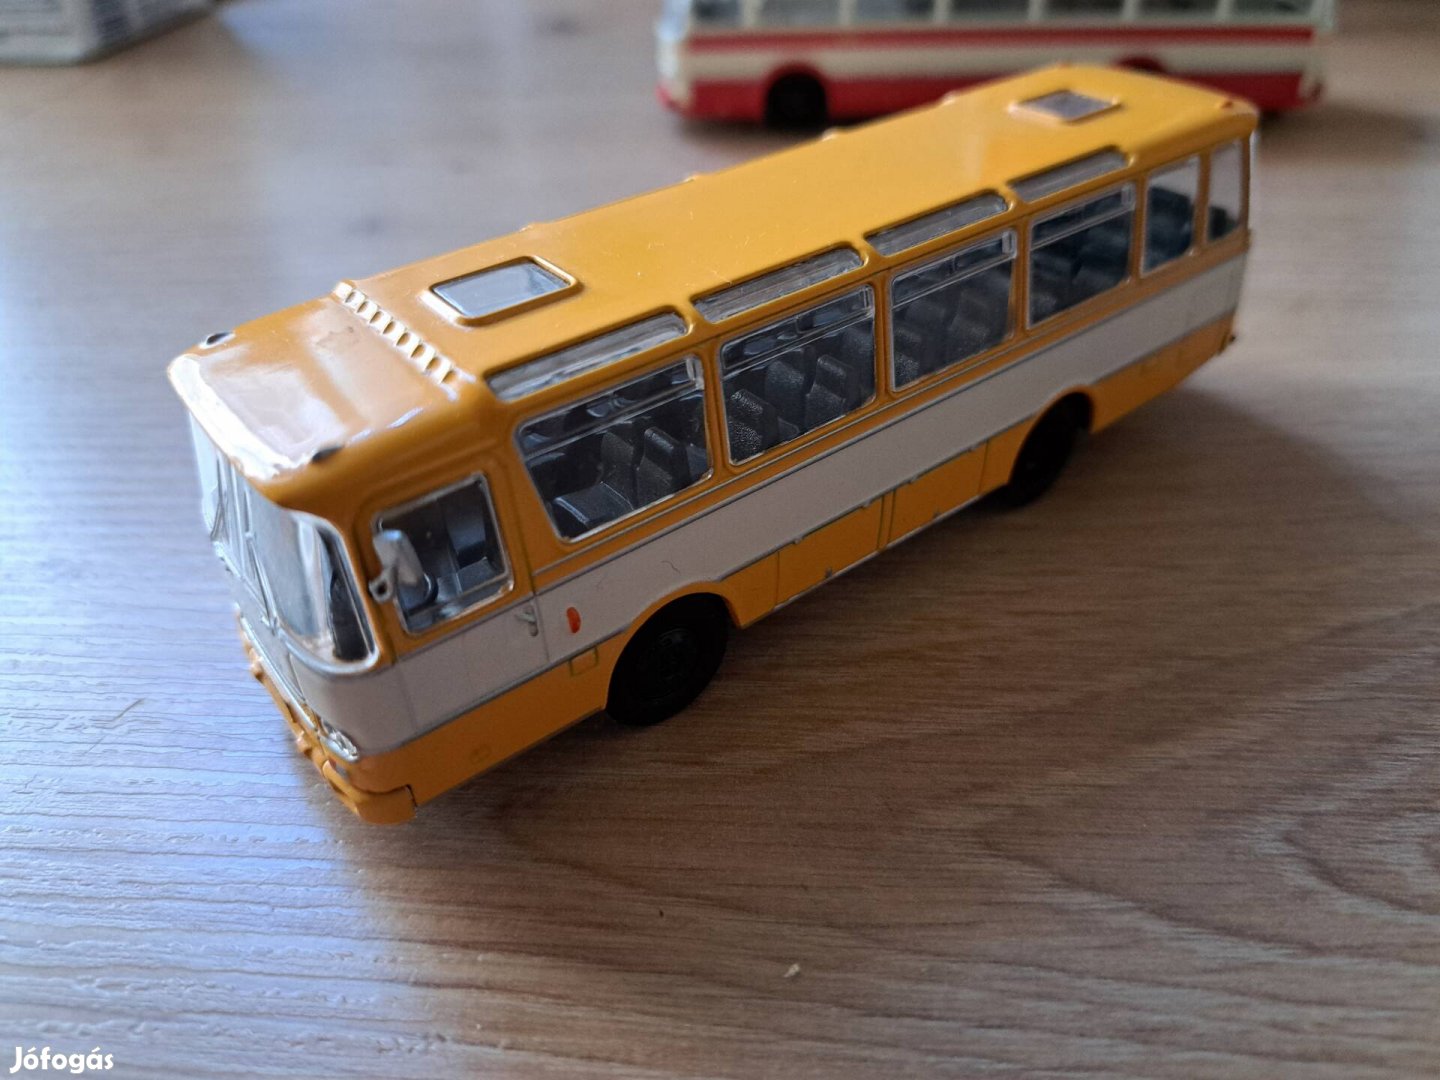 Eladó Autosan H9-03 busz modell , 1/72-es méretarány